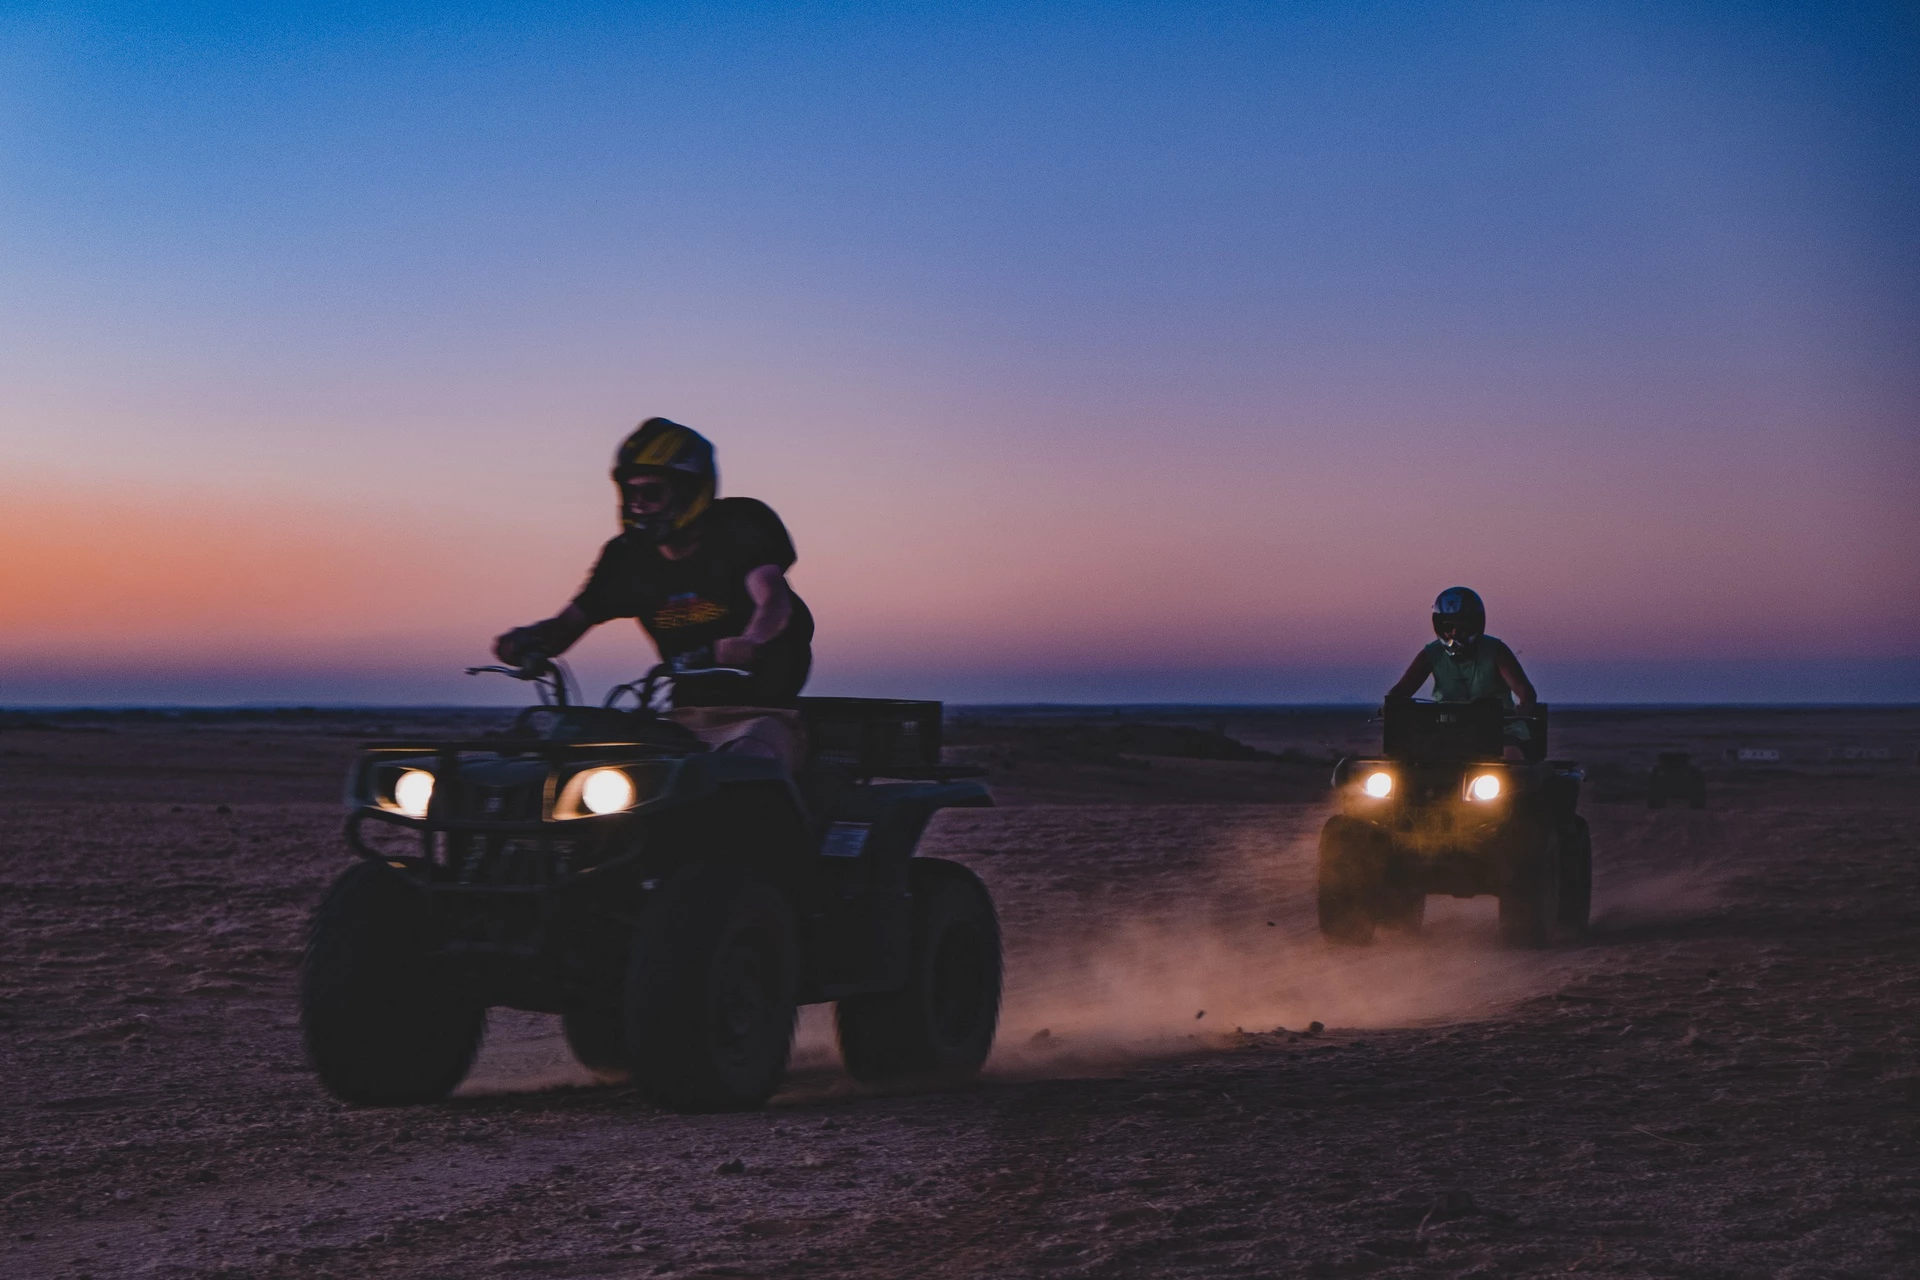 Hành trình gần hết sa mạc ấn tượng này dài 750 km. Chỉ cần tưởng tượng được điều khiển tay lái giữa biển cát mênh mông không thấy chân trời, những người ưa mạo hiểm và yêu thiên nhiên cũng đủ mê đắm vẻ đẹp huyền ảo nơi đây.